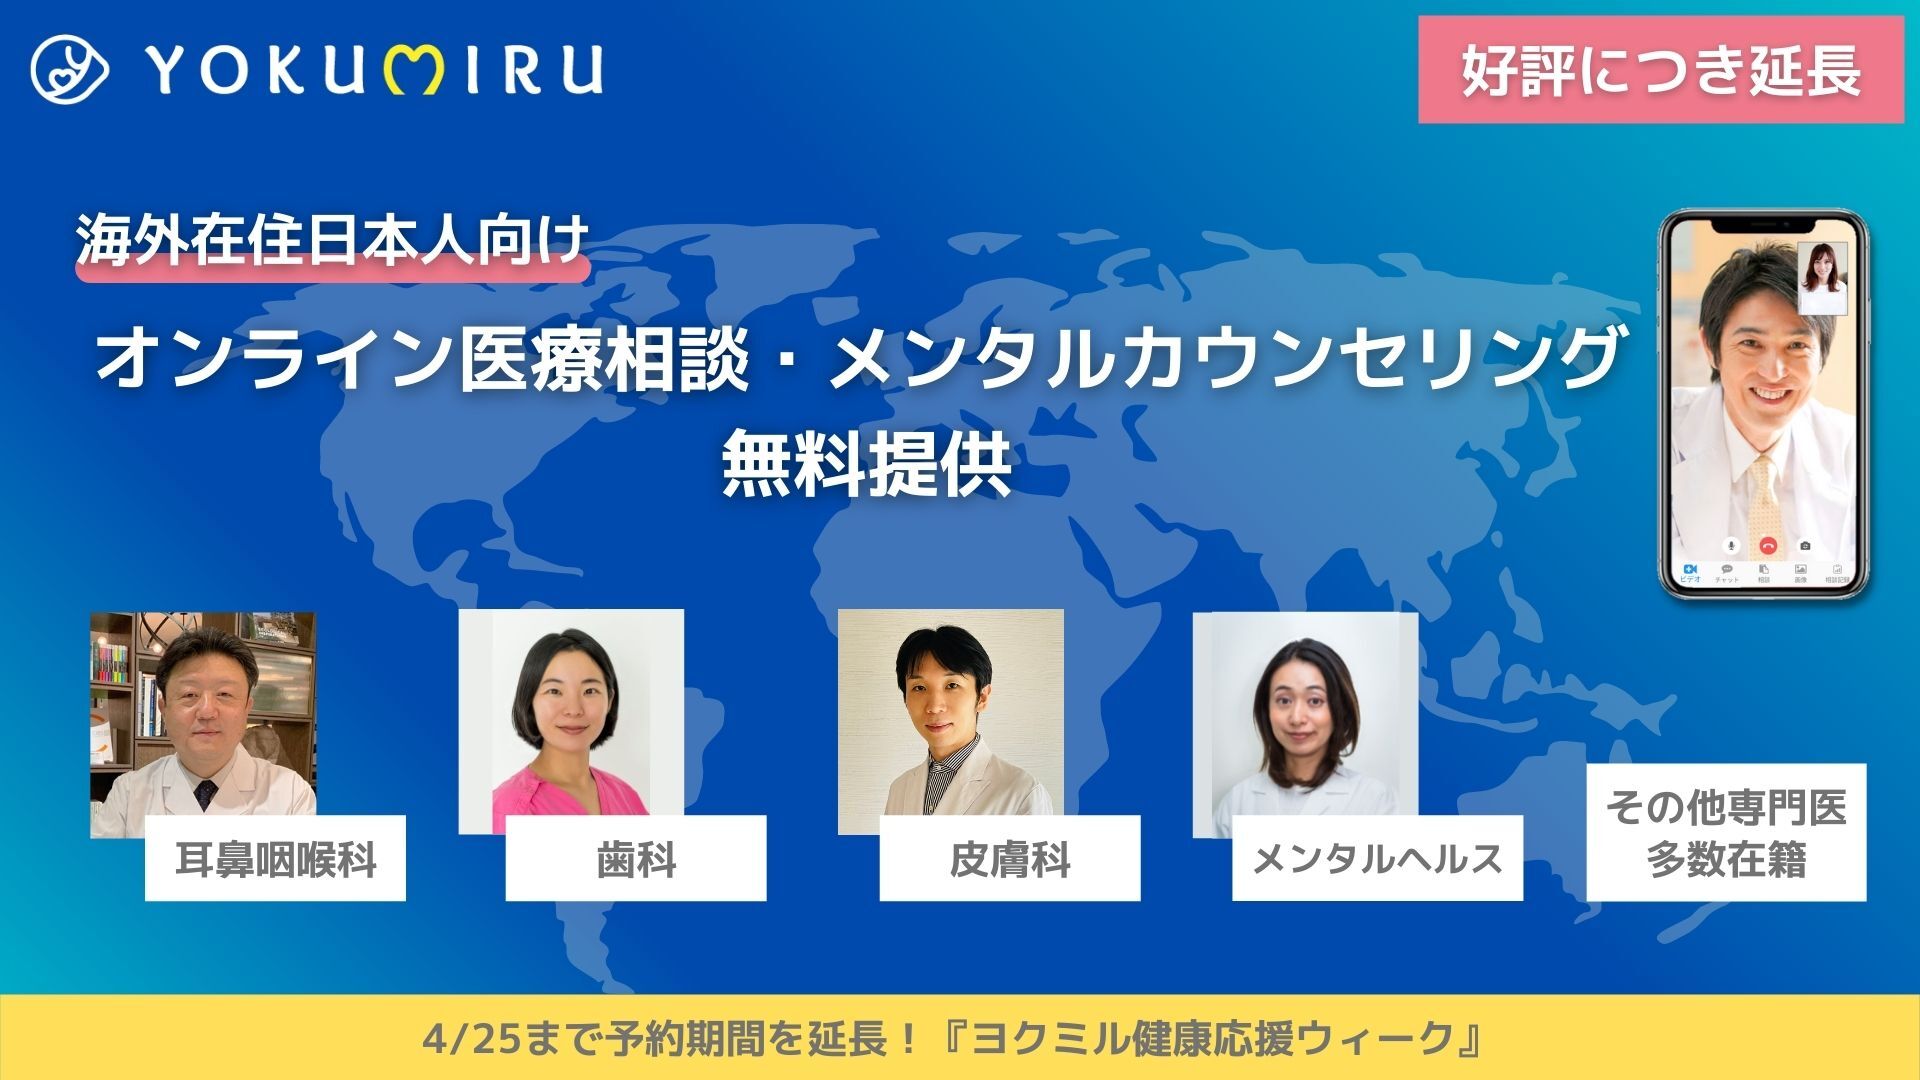 YOKUMIRU株式会社が海外在住の日本人に向けた支援プログラムを実施